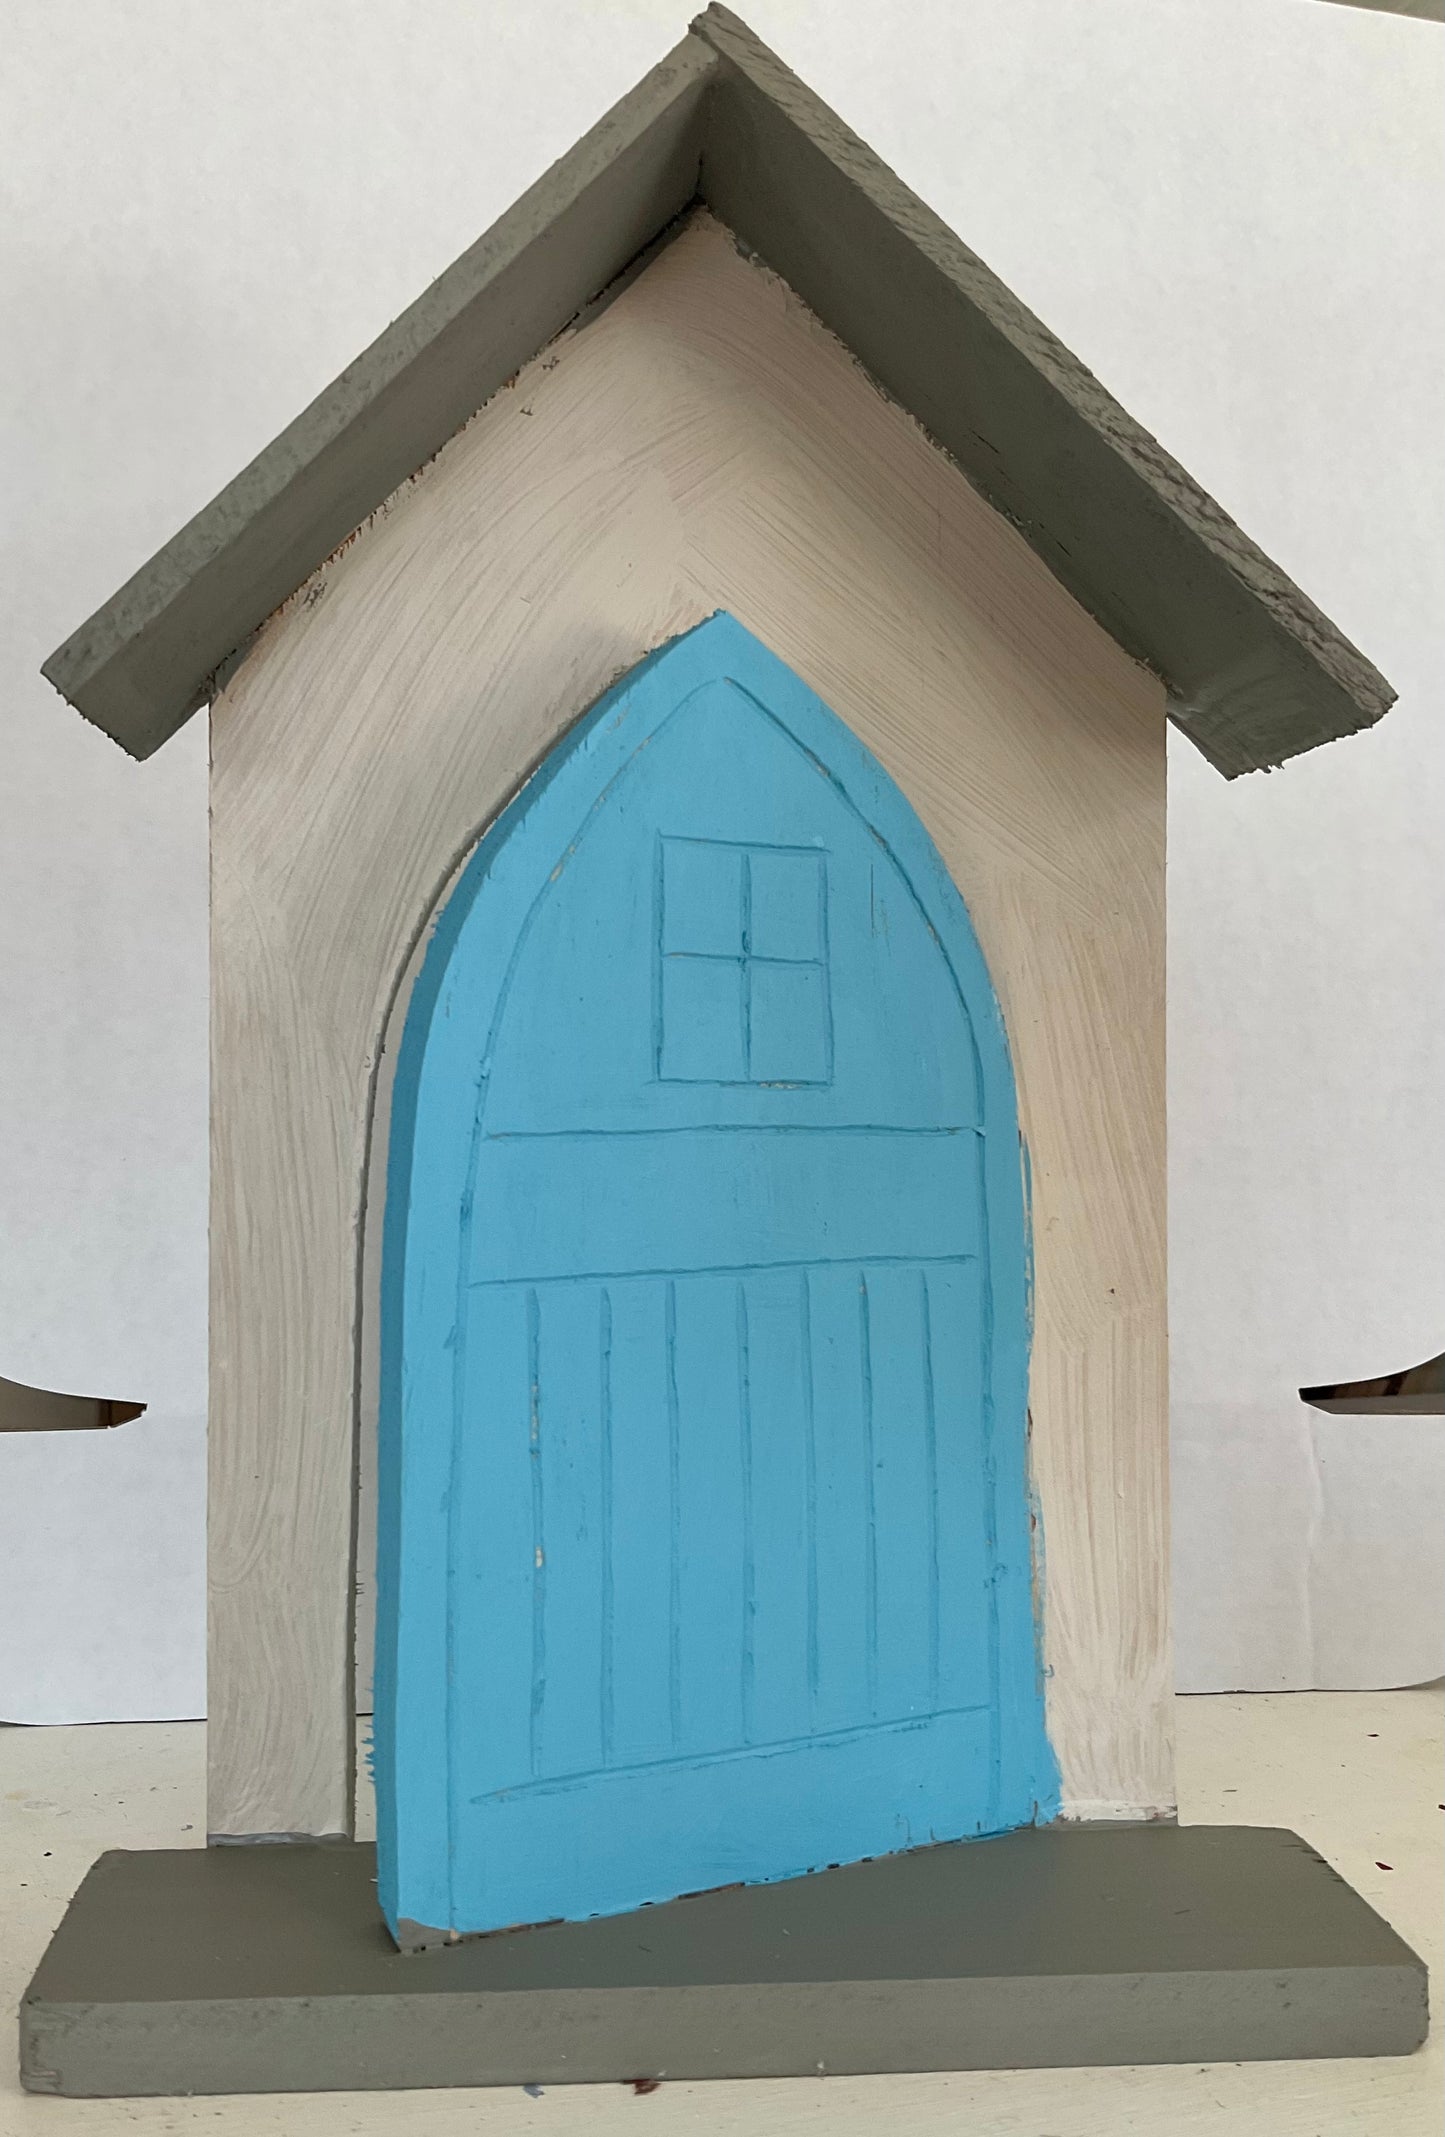 Fairy Door Kit